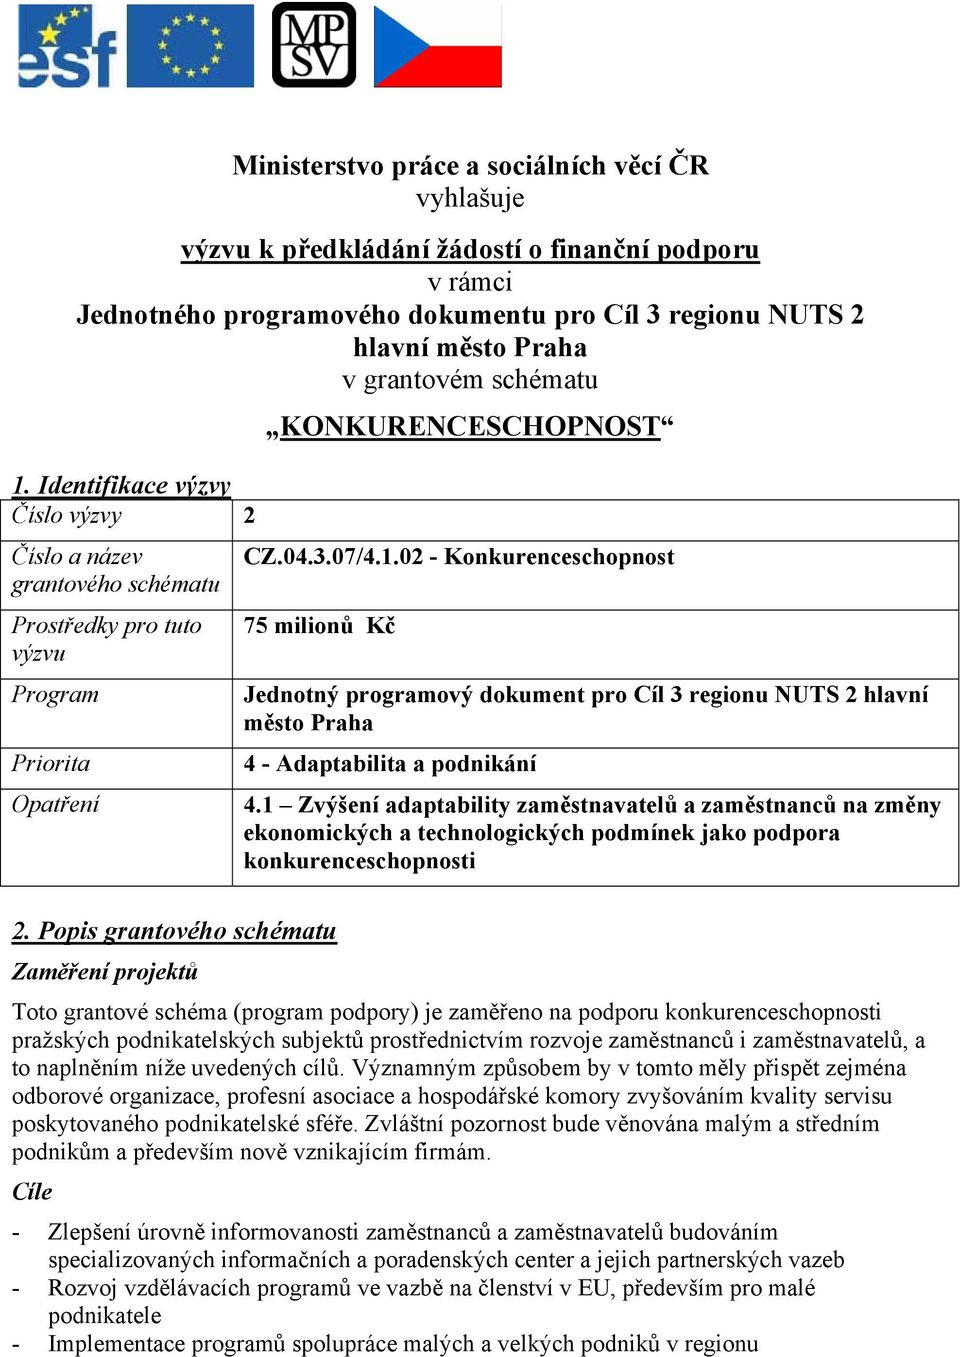 Popis grantového schématu Zaměření projektů Jednotný programový dokument pro Cíl 3 regionu NUTS 2 hlavní město Praha 4 - Adaptabilita a podnikání 4.